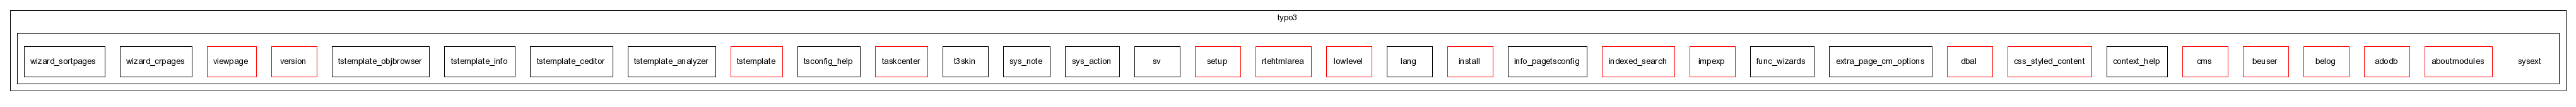 typo3_src-4.0.1/typo3/sysext/